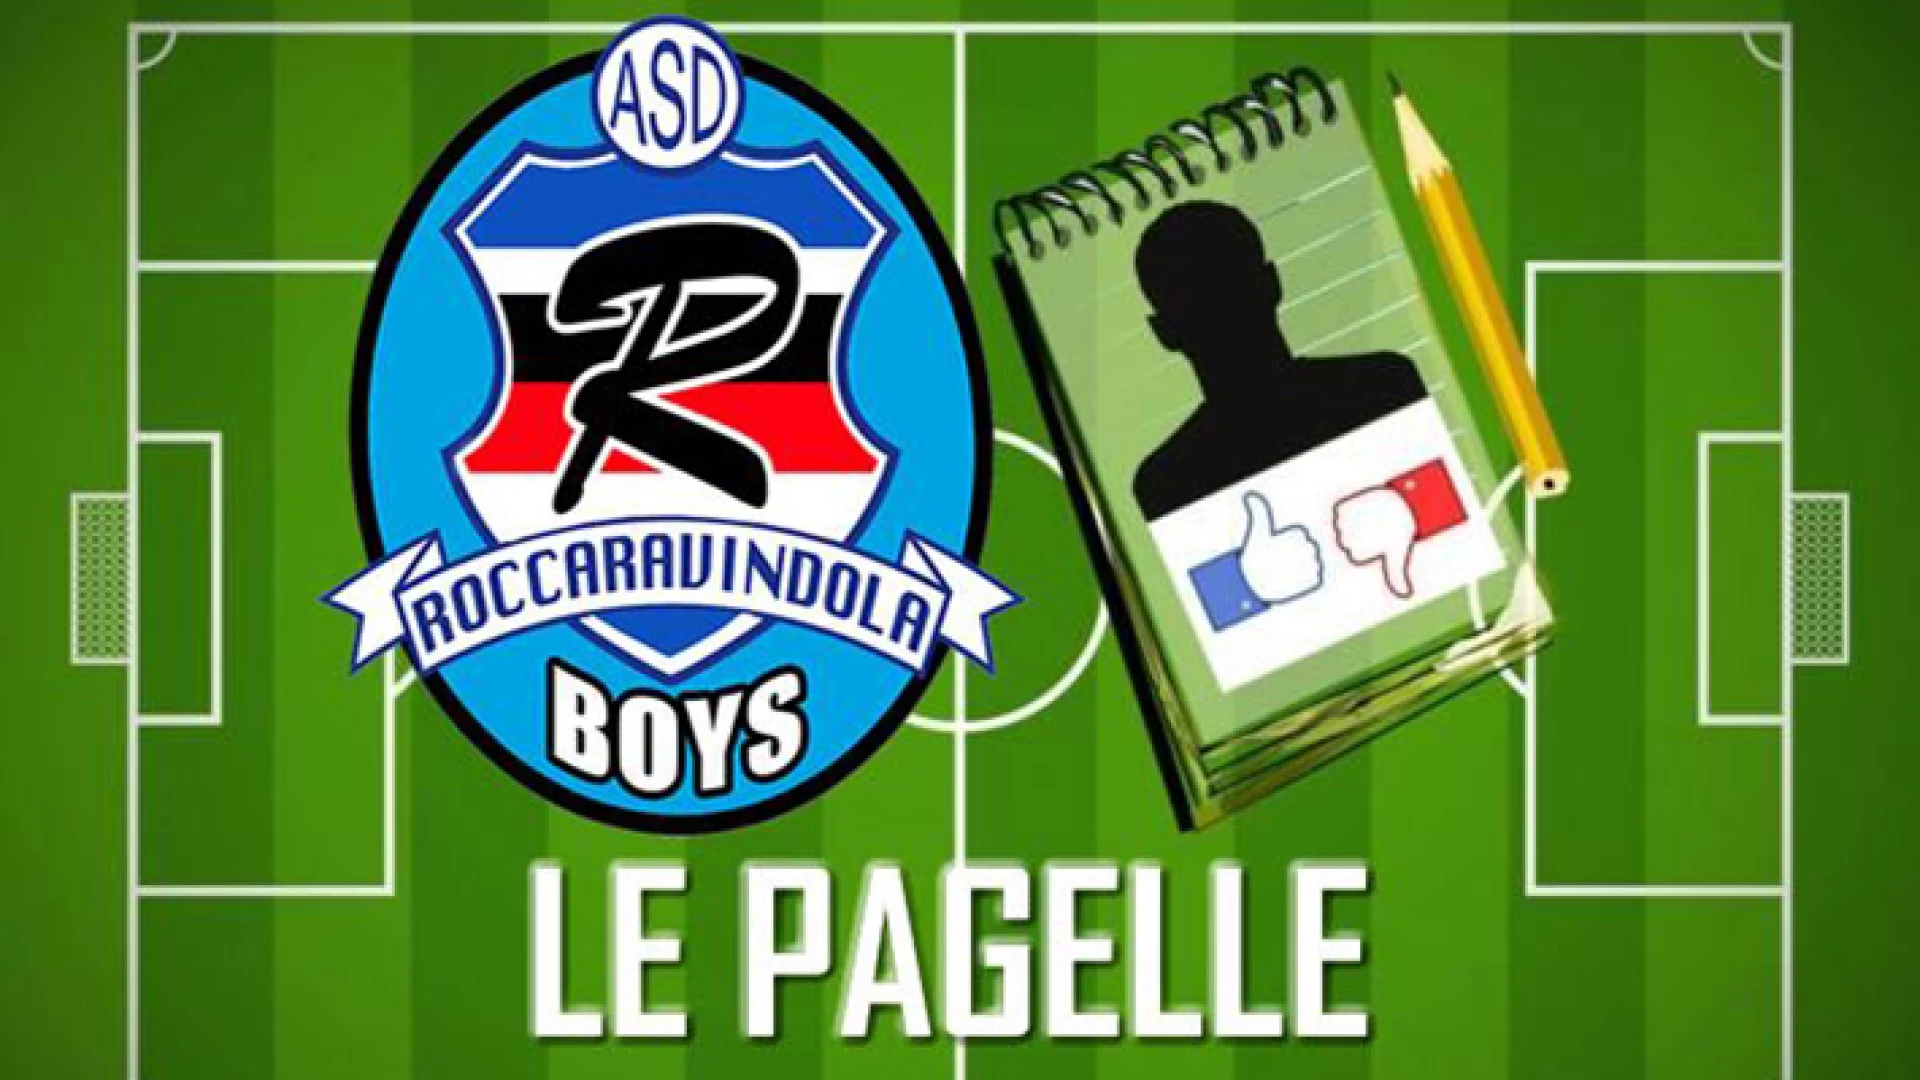 Calcio giovanile: le pagelle della Boys. La nuova rubrica della scuola calcio Asd Boys Roccaravindola.